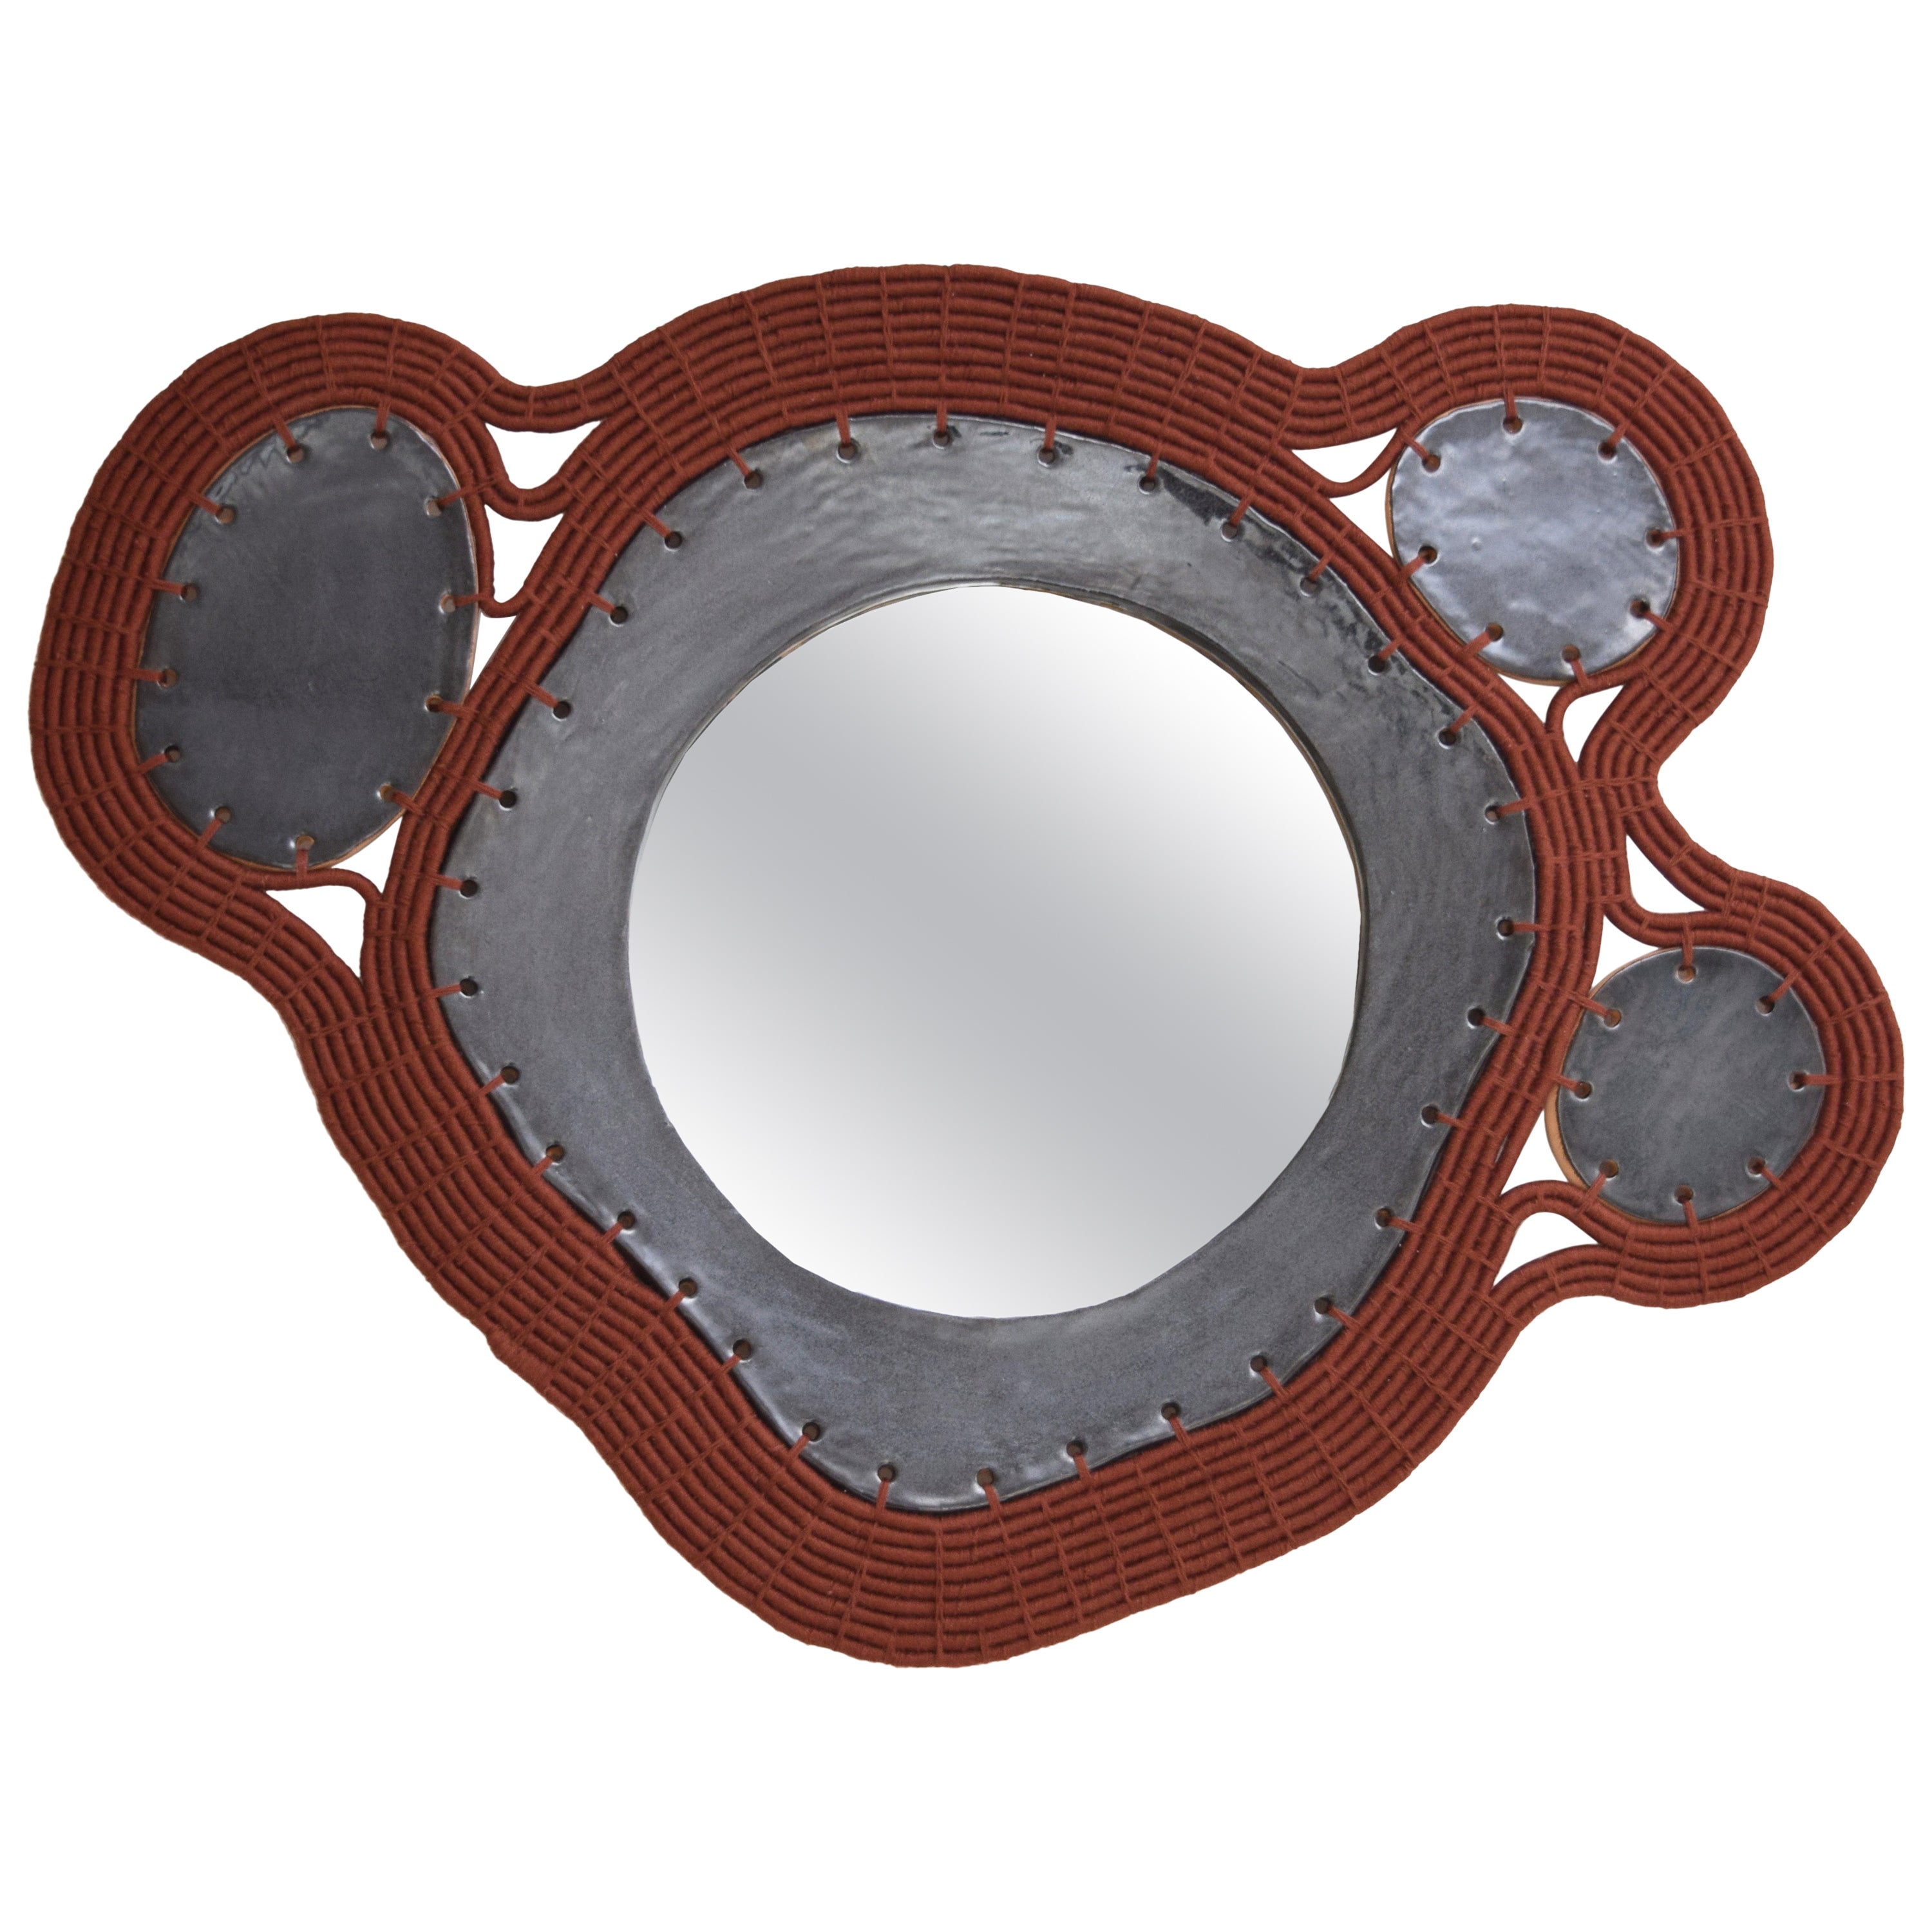 Einzigartiger handgefertigter Spiegel #794, gewebte rostige Baumwolle & schwarz glasierte Keramik